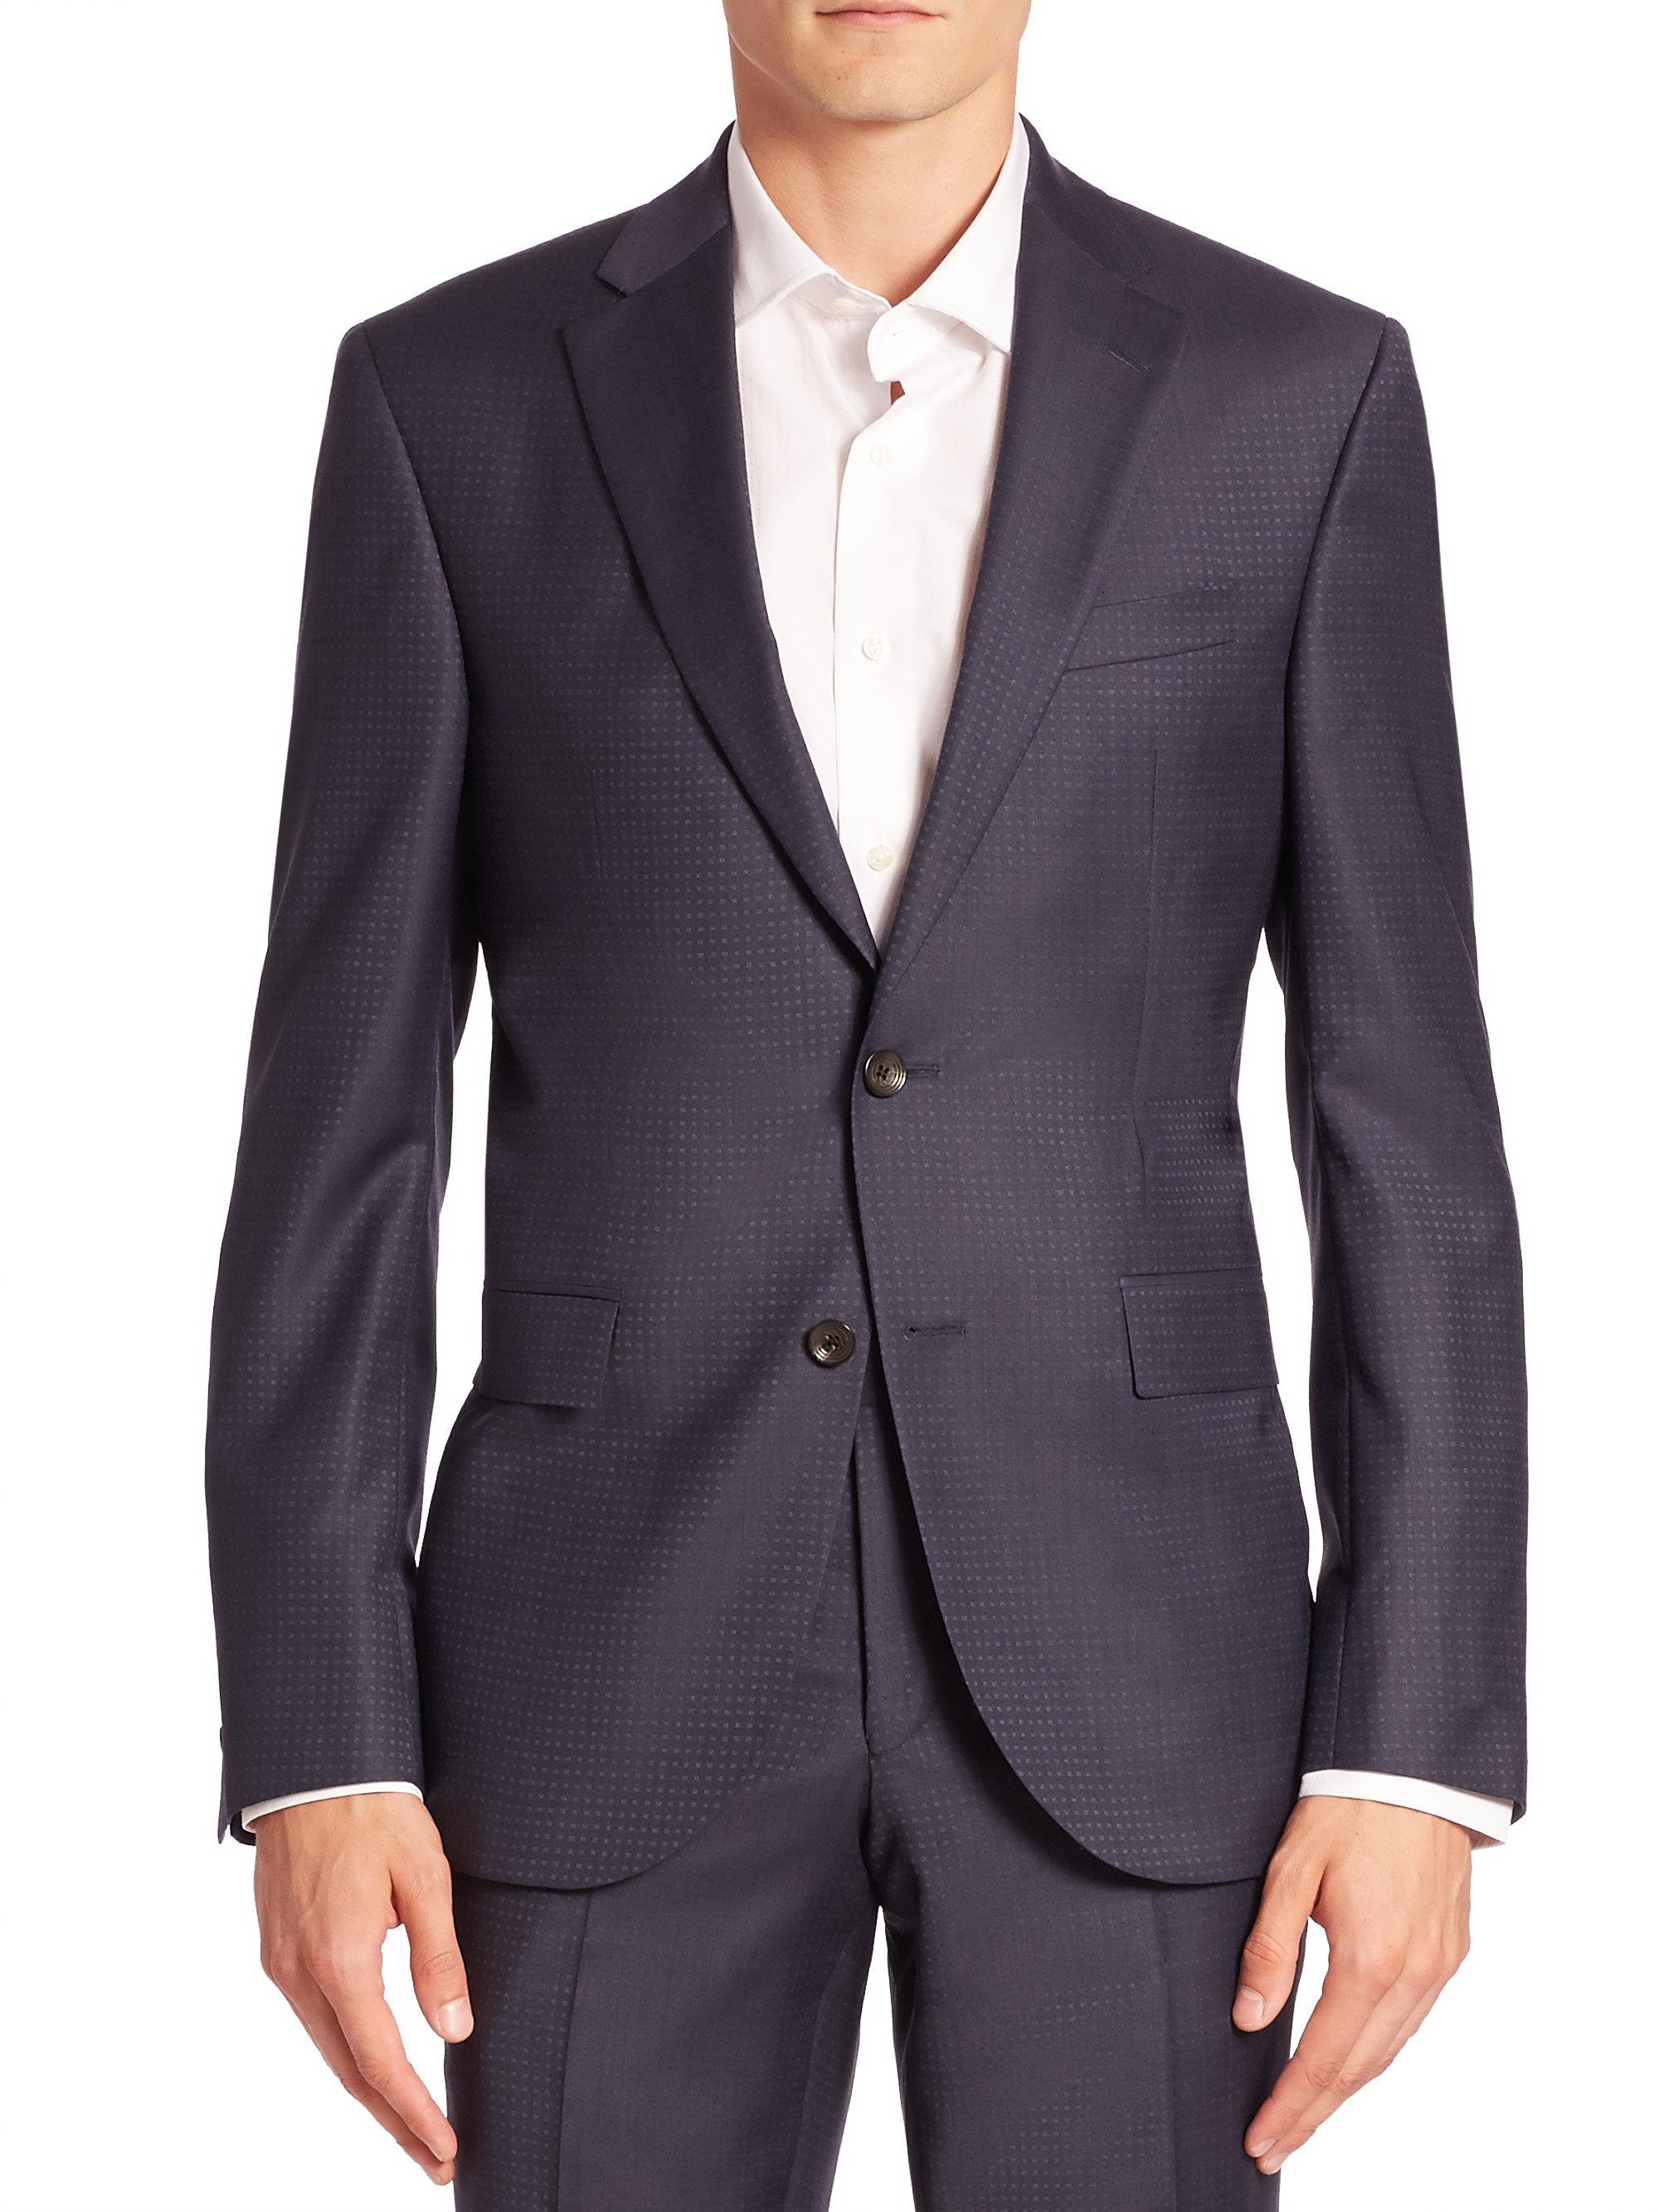 Lyst - Saks Fifth Avenue Modern Geometric Wool Suit Jacket in Blue for Men